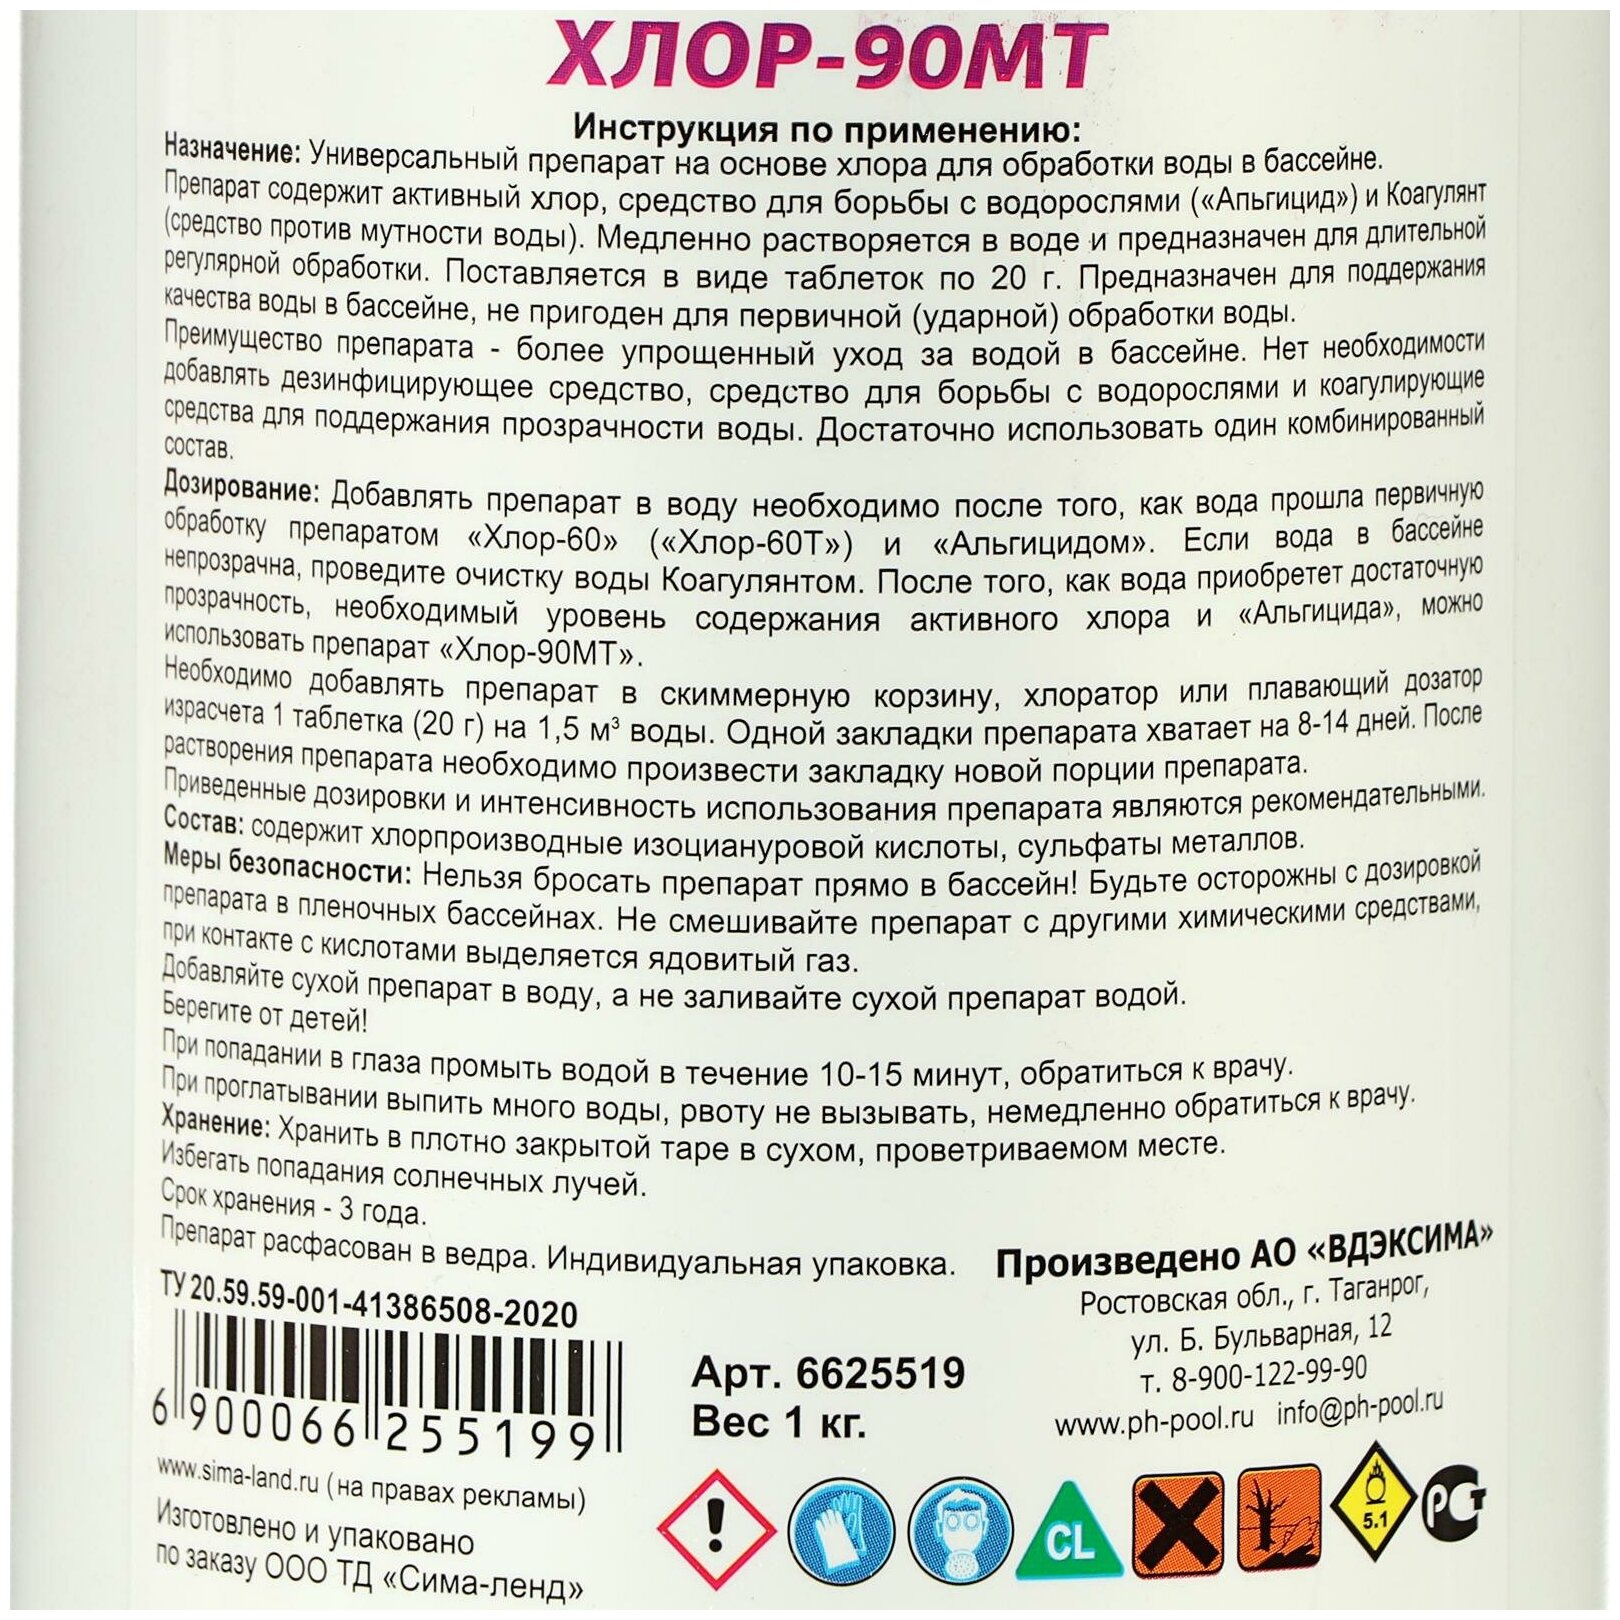 Дезинфицирующие средство Aqualand Хлор-90МТ таблетки 20 г 1 кг